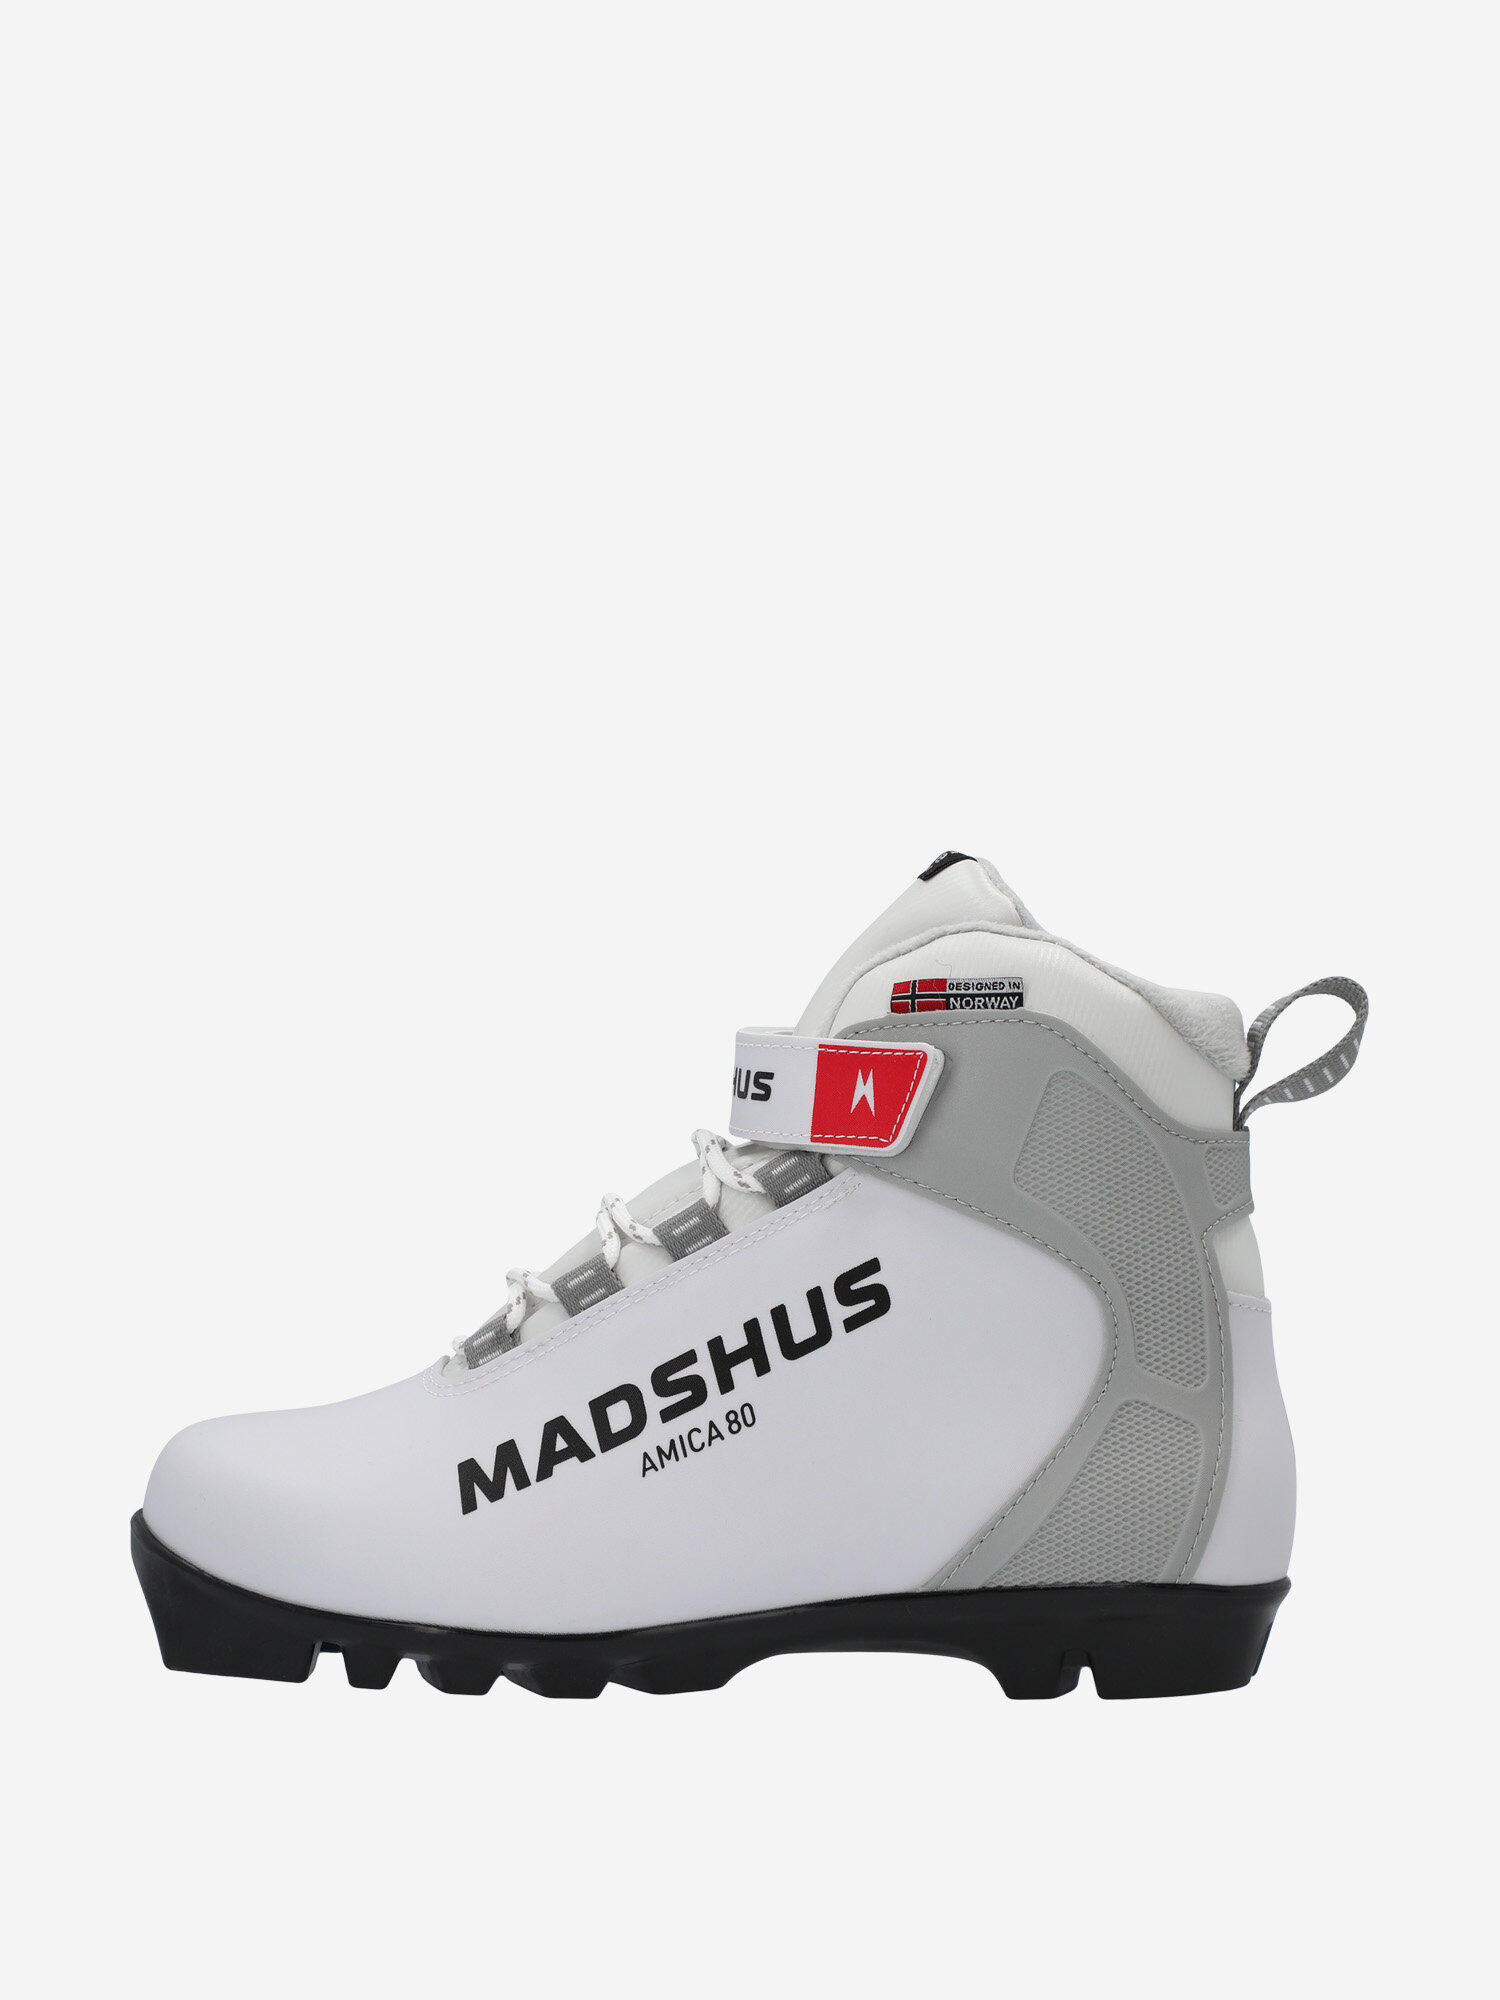 Ботинки для беговых лыж женские Madshus Amica 80 Белый; RUS: 38, Ориг: 39